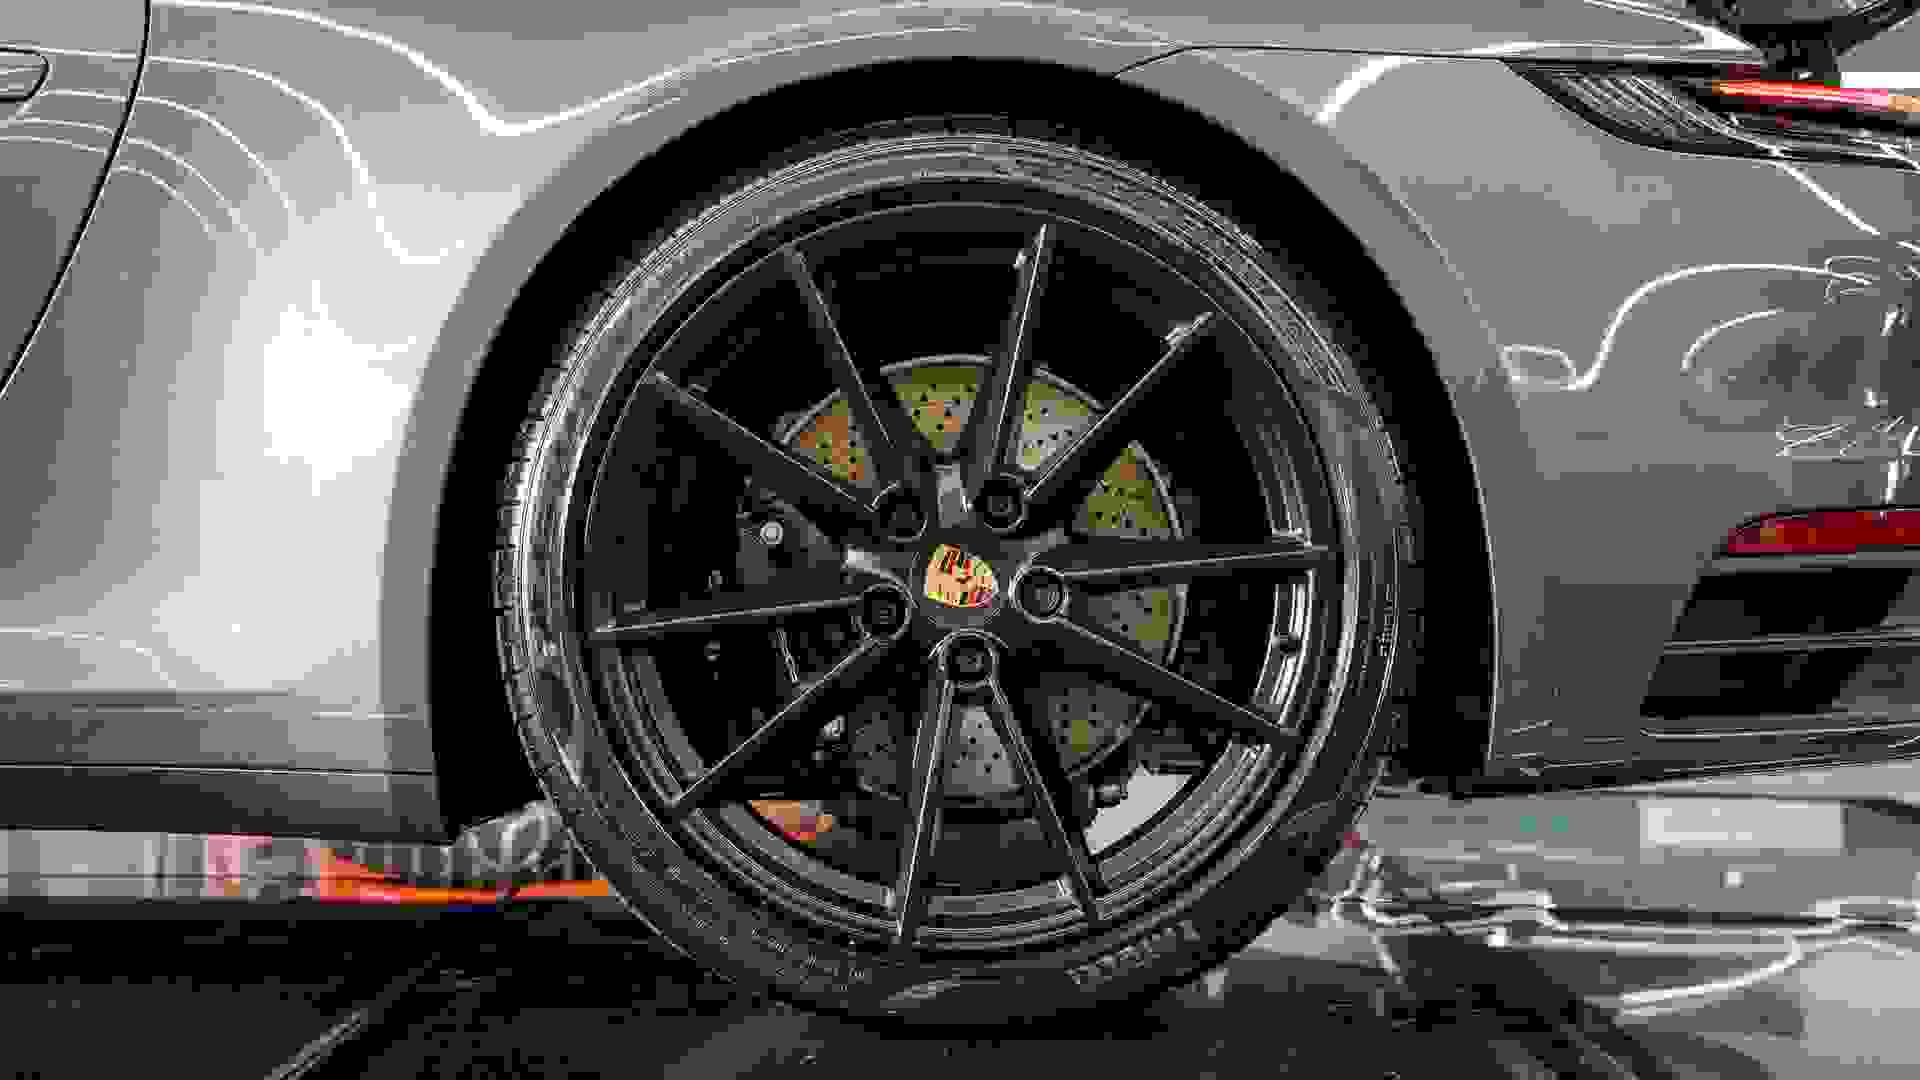 Porsche 911 Photo 70c00fb9-a998-45a9-80ad-0cee261a7a11.jpg